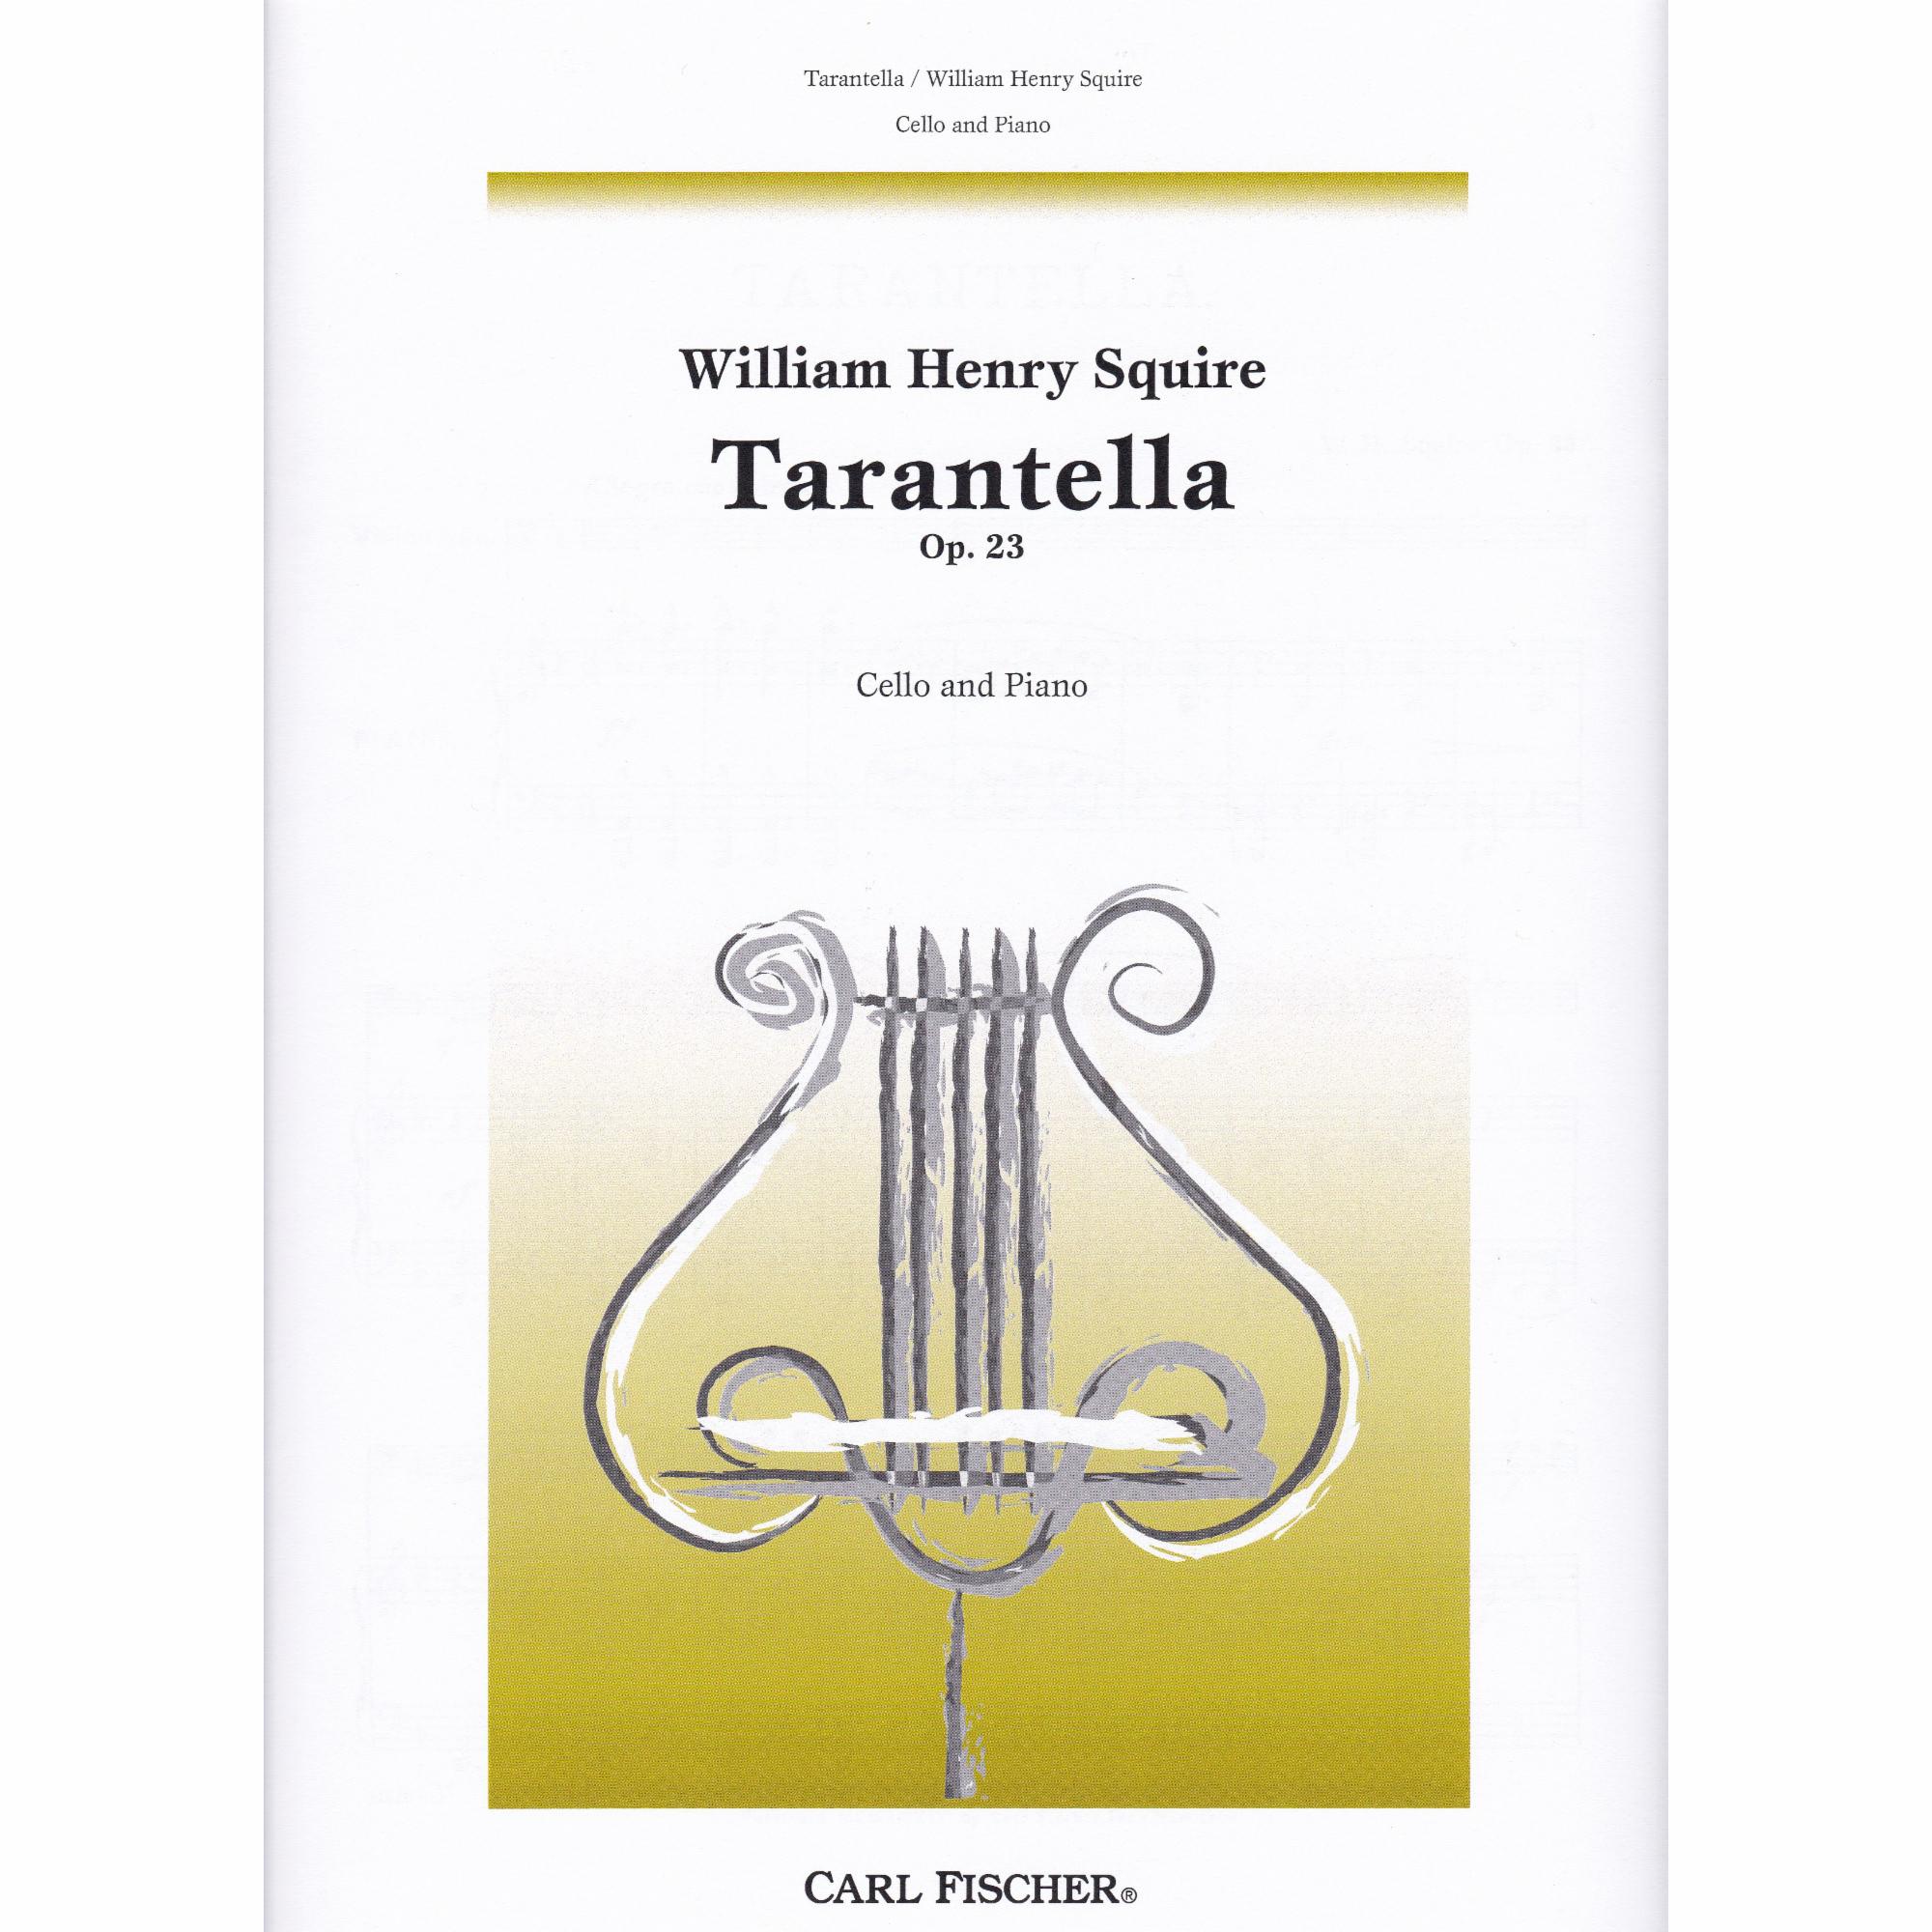 Tarantella for Cello and Piano, Op. 23